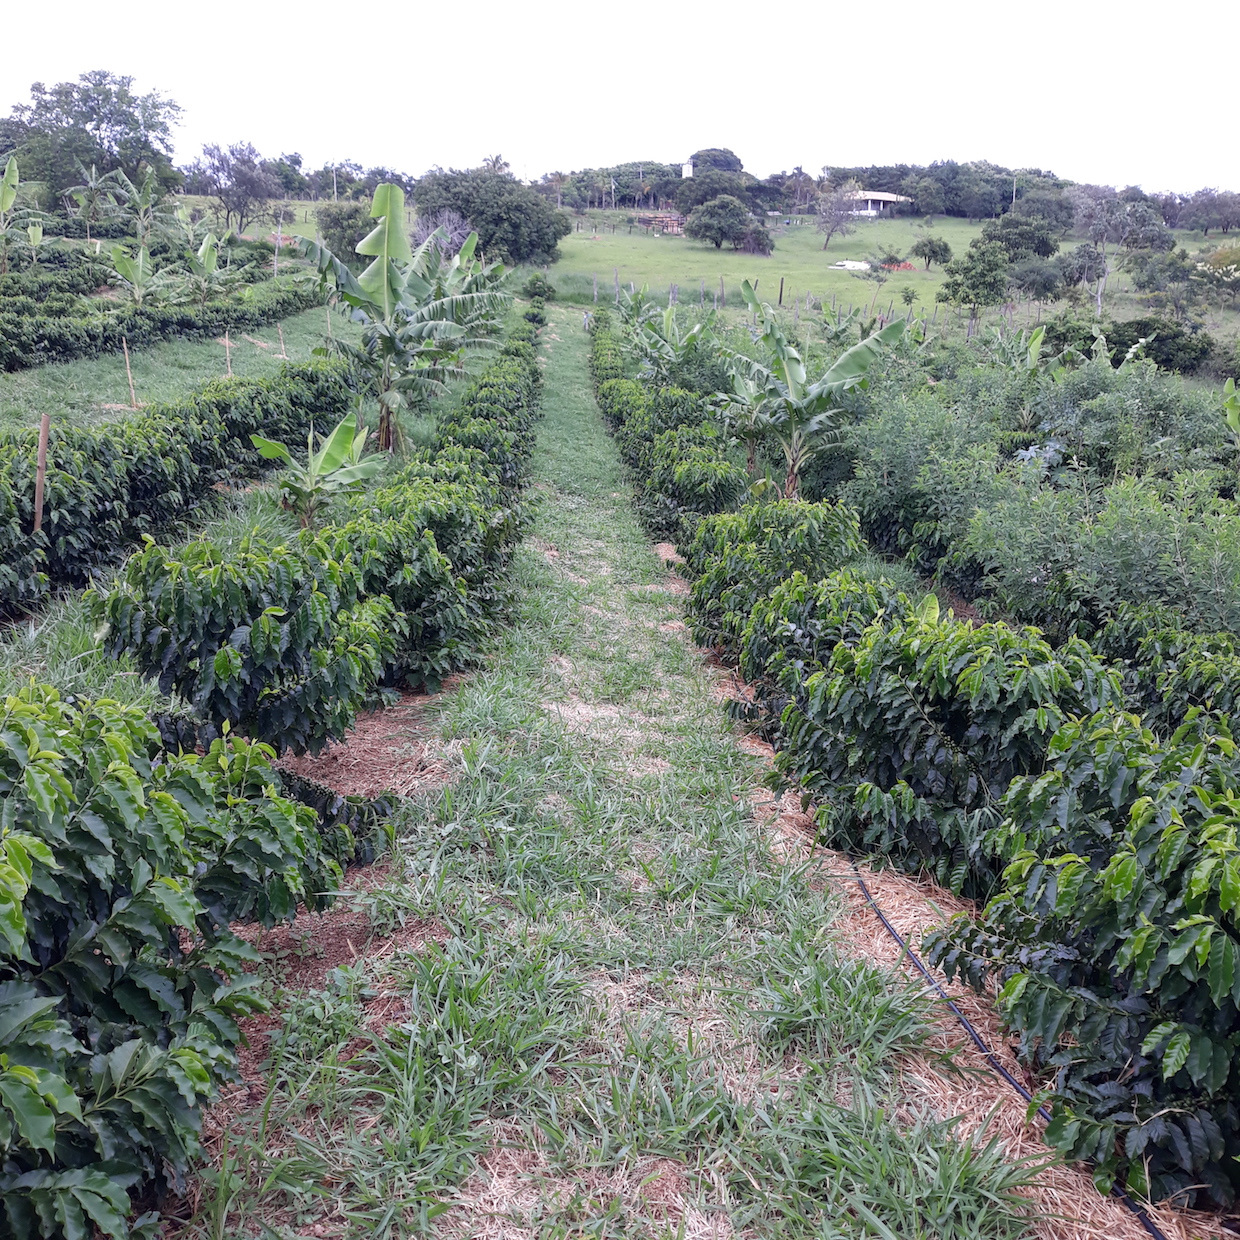 Cultivar café en Florida: una posibilidad en exploraciónDaily Coffee News  by Roast Magazine